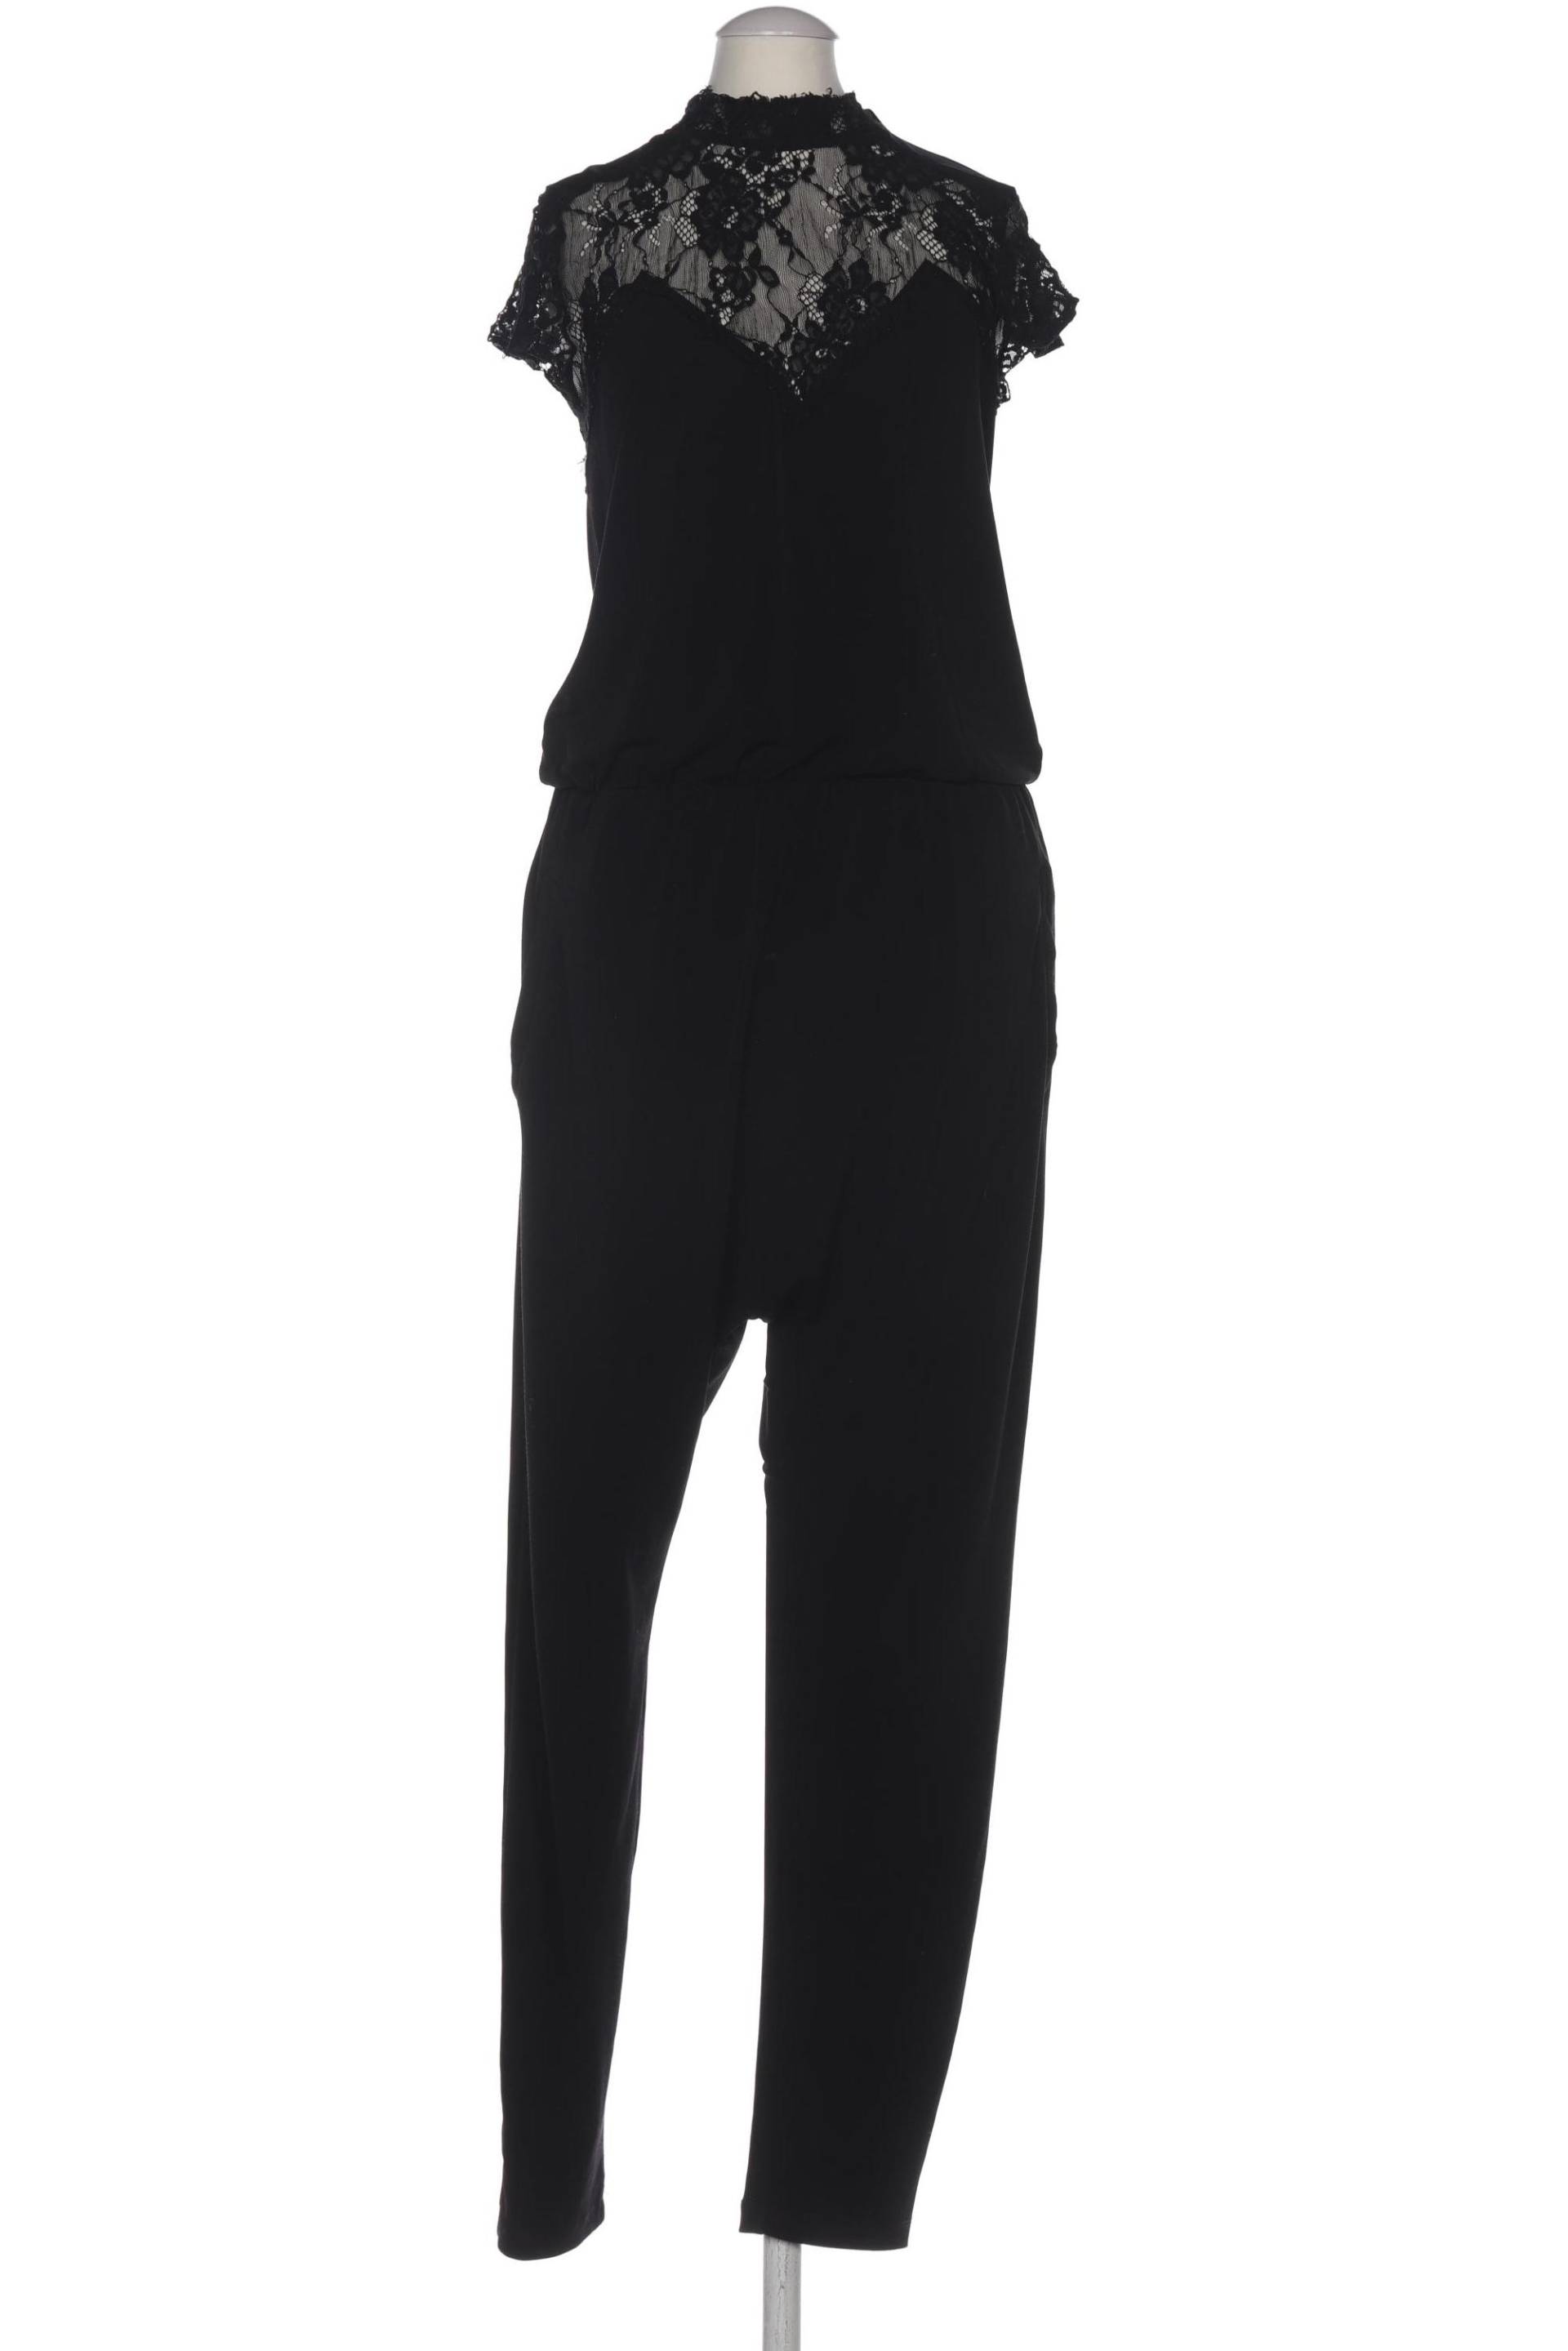 tigha Damen Jumpsuit/Overall, schwarz von tigha